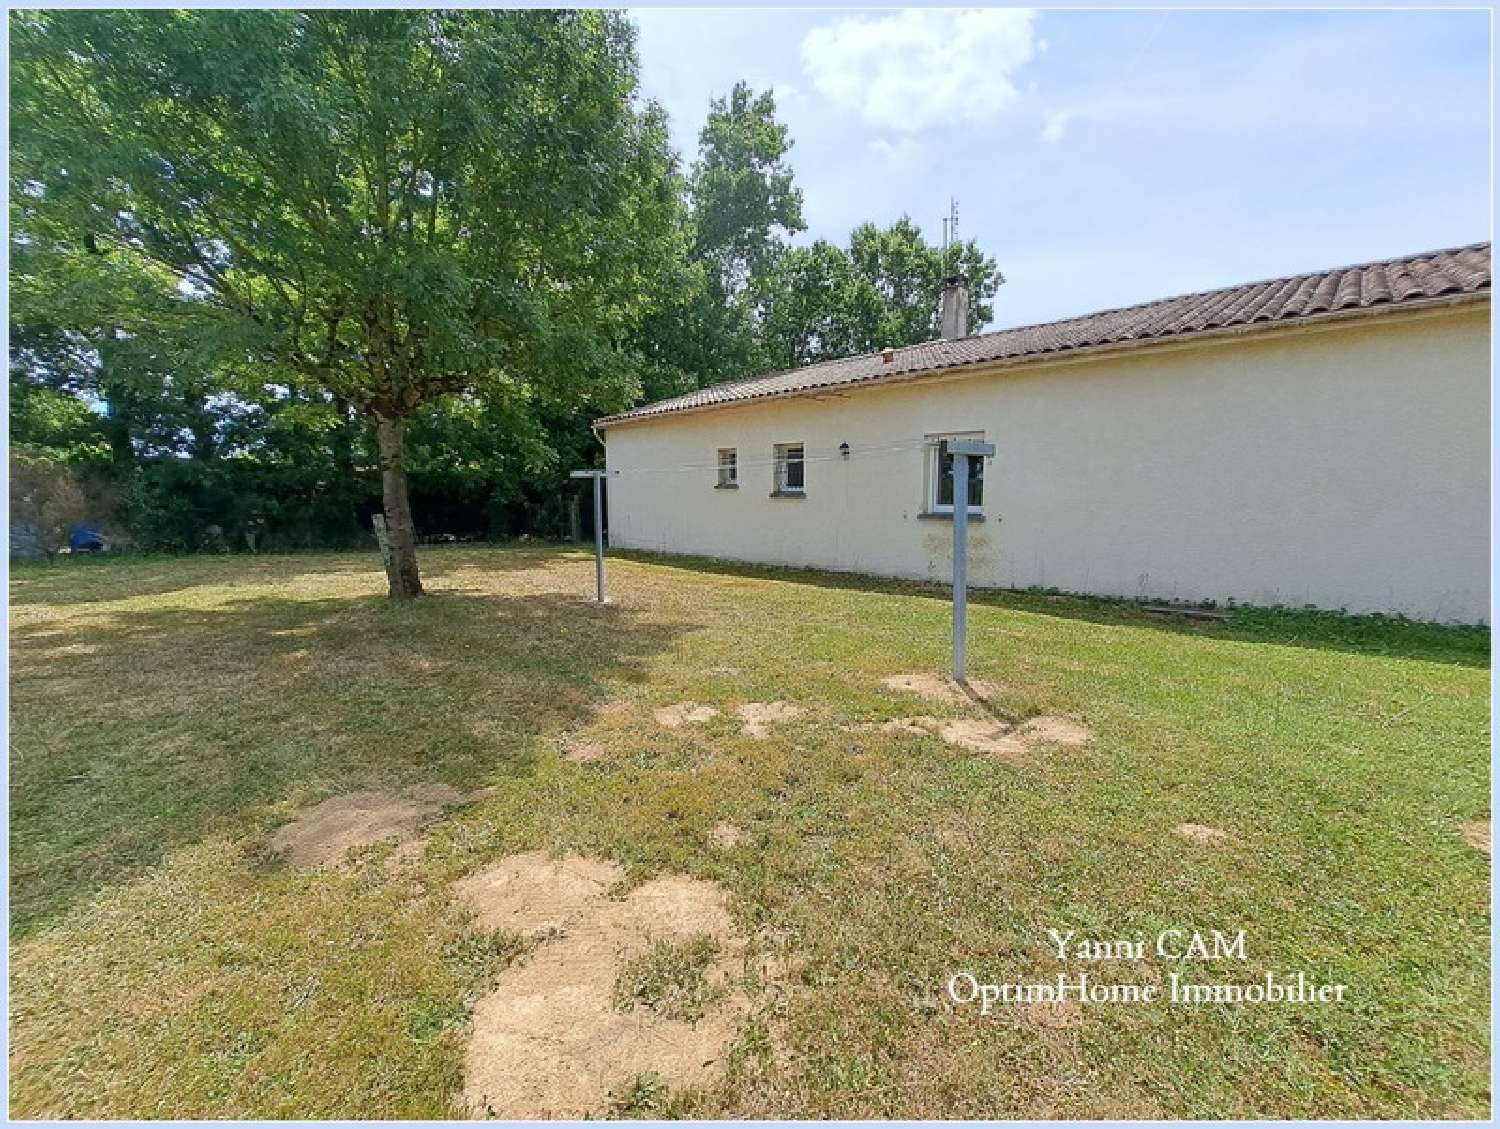  à vendre maison Monfaucon Dordogne 8